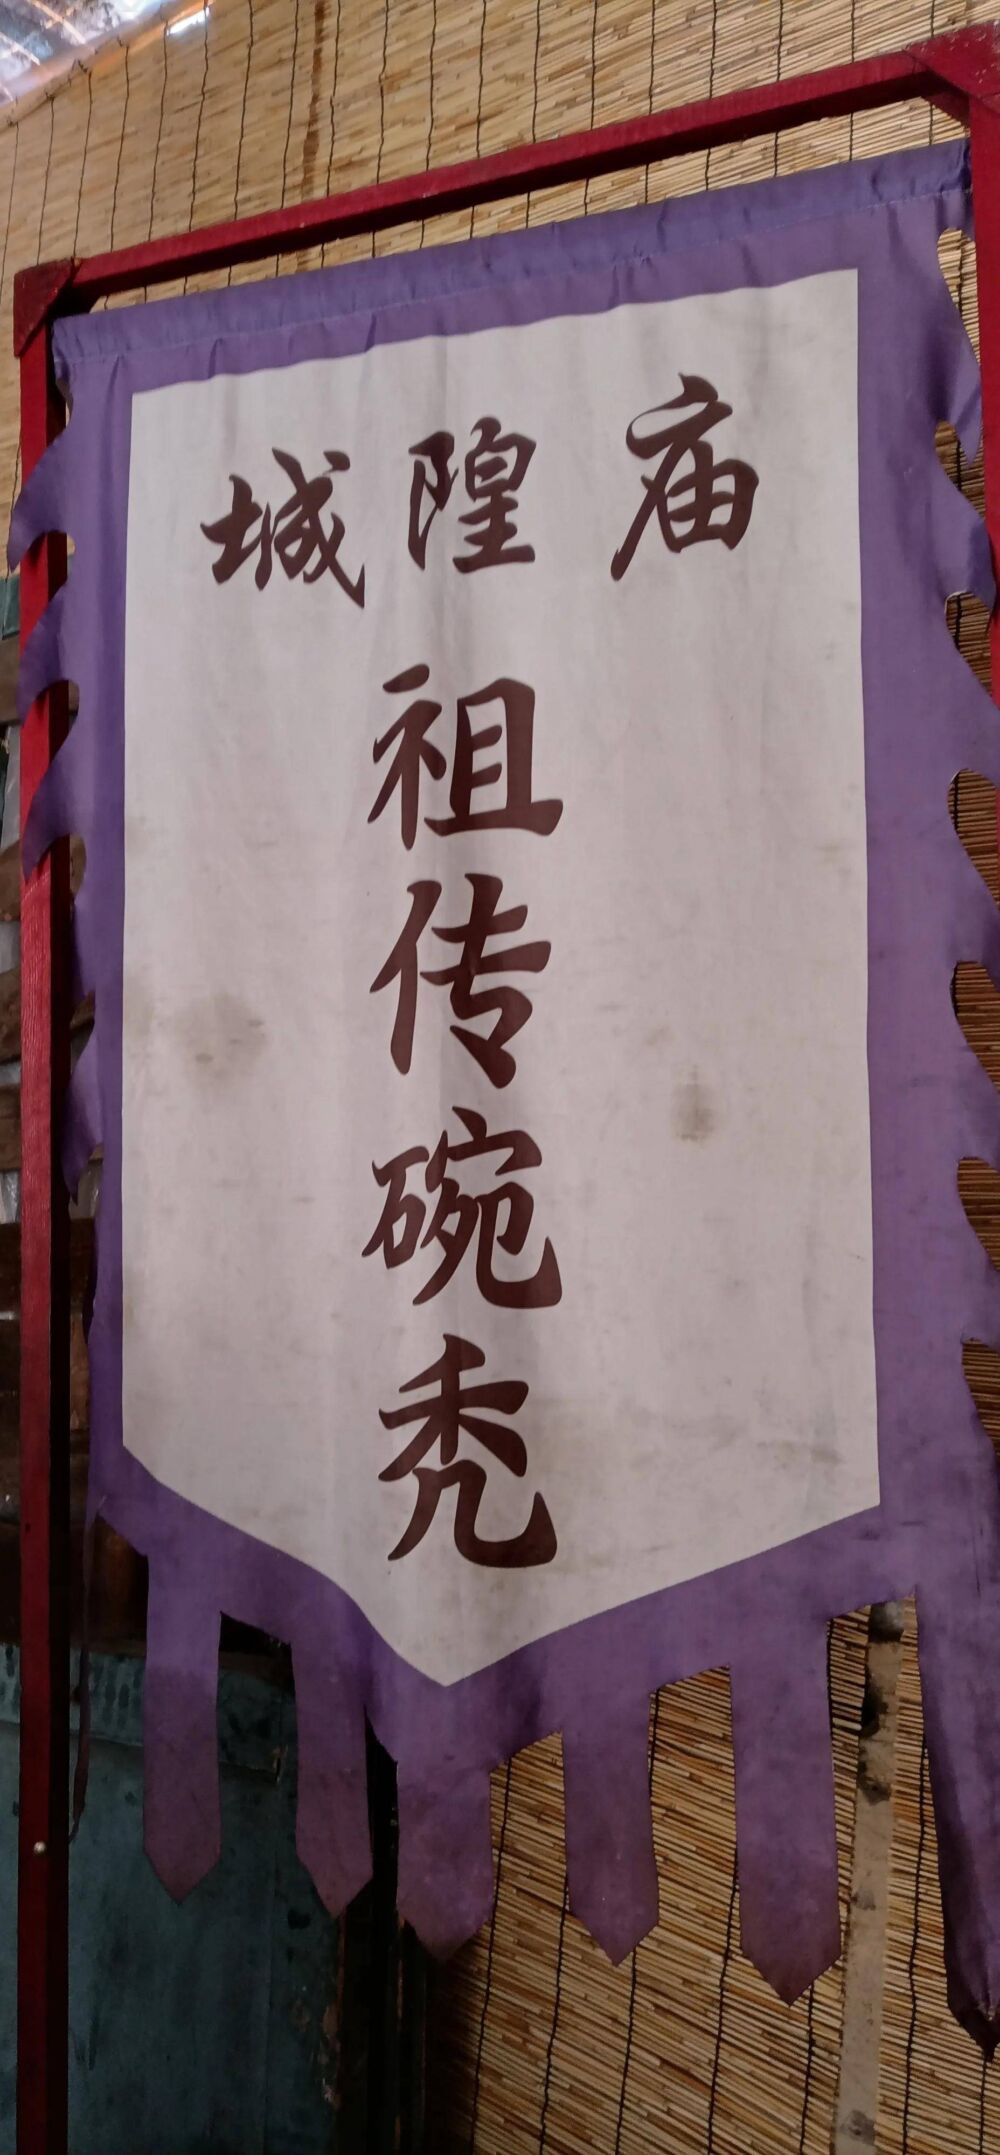 龟城，中国第一票号，祖传碗秃，走进平遥的历史与现在